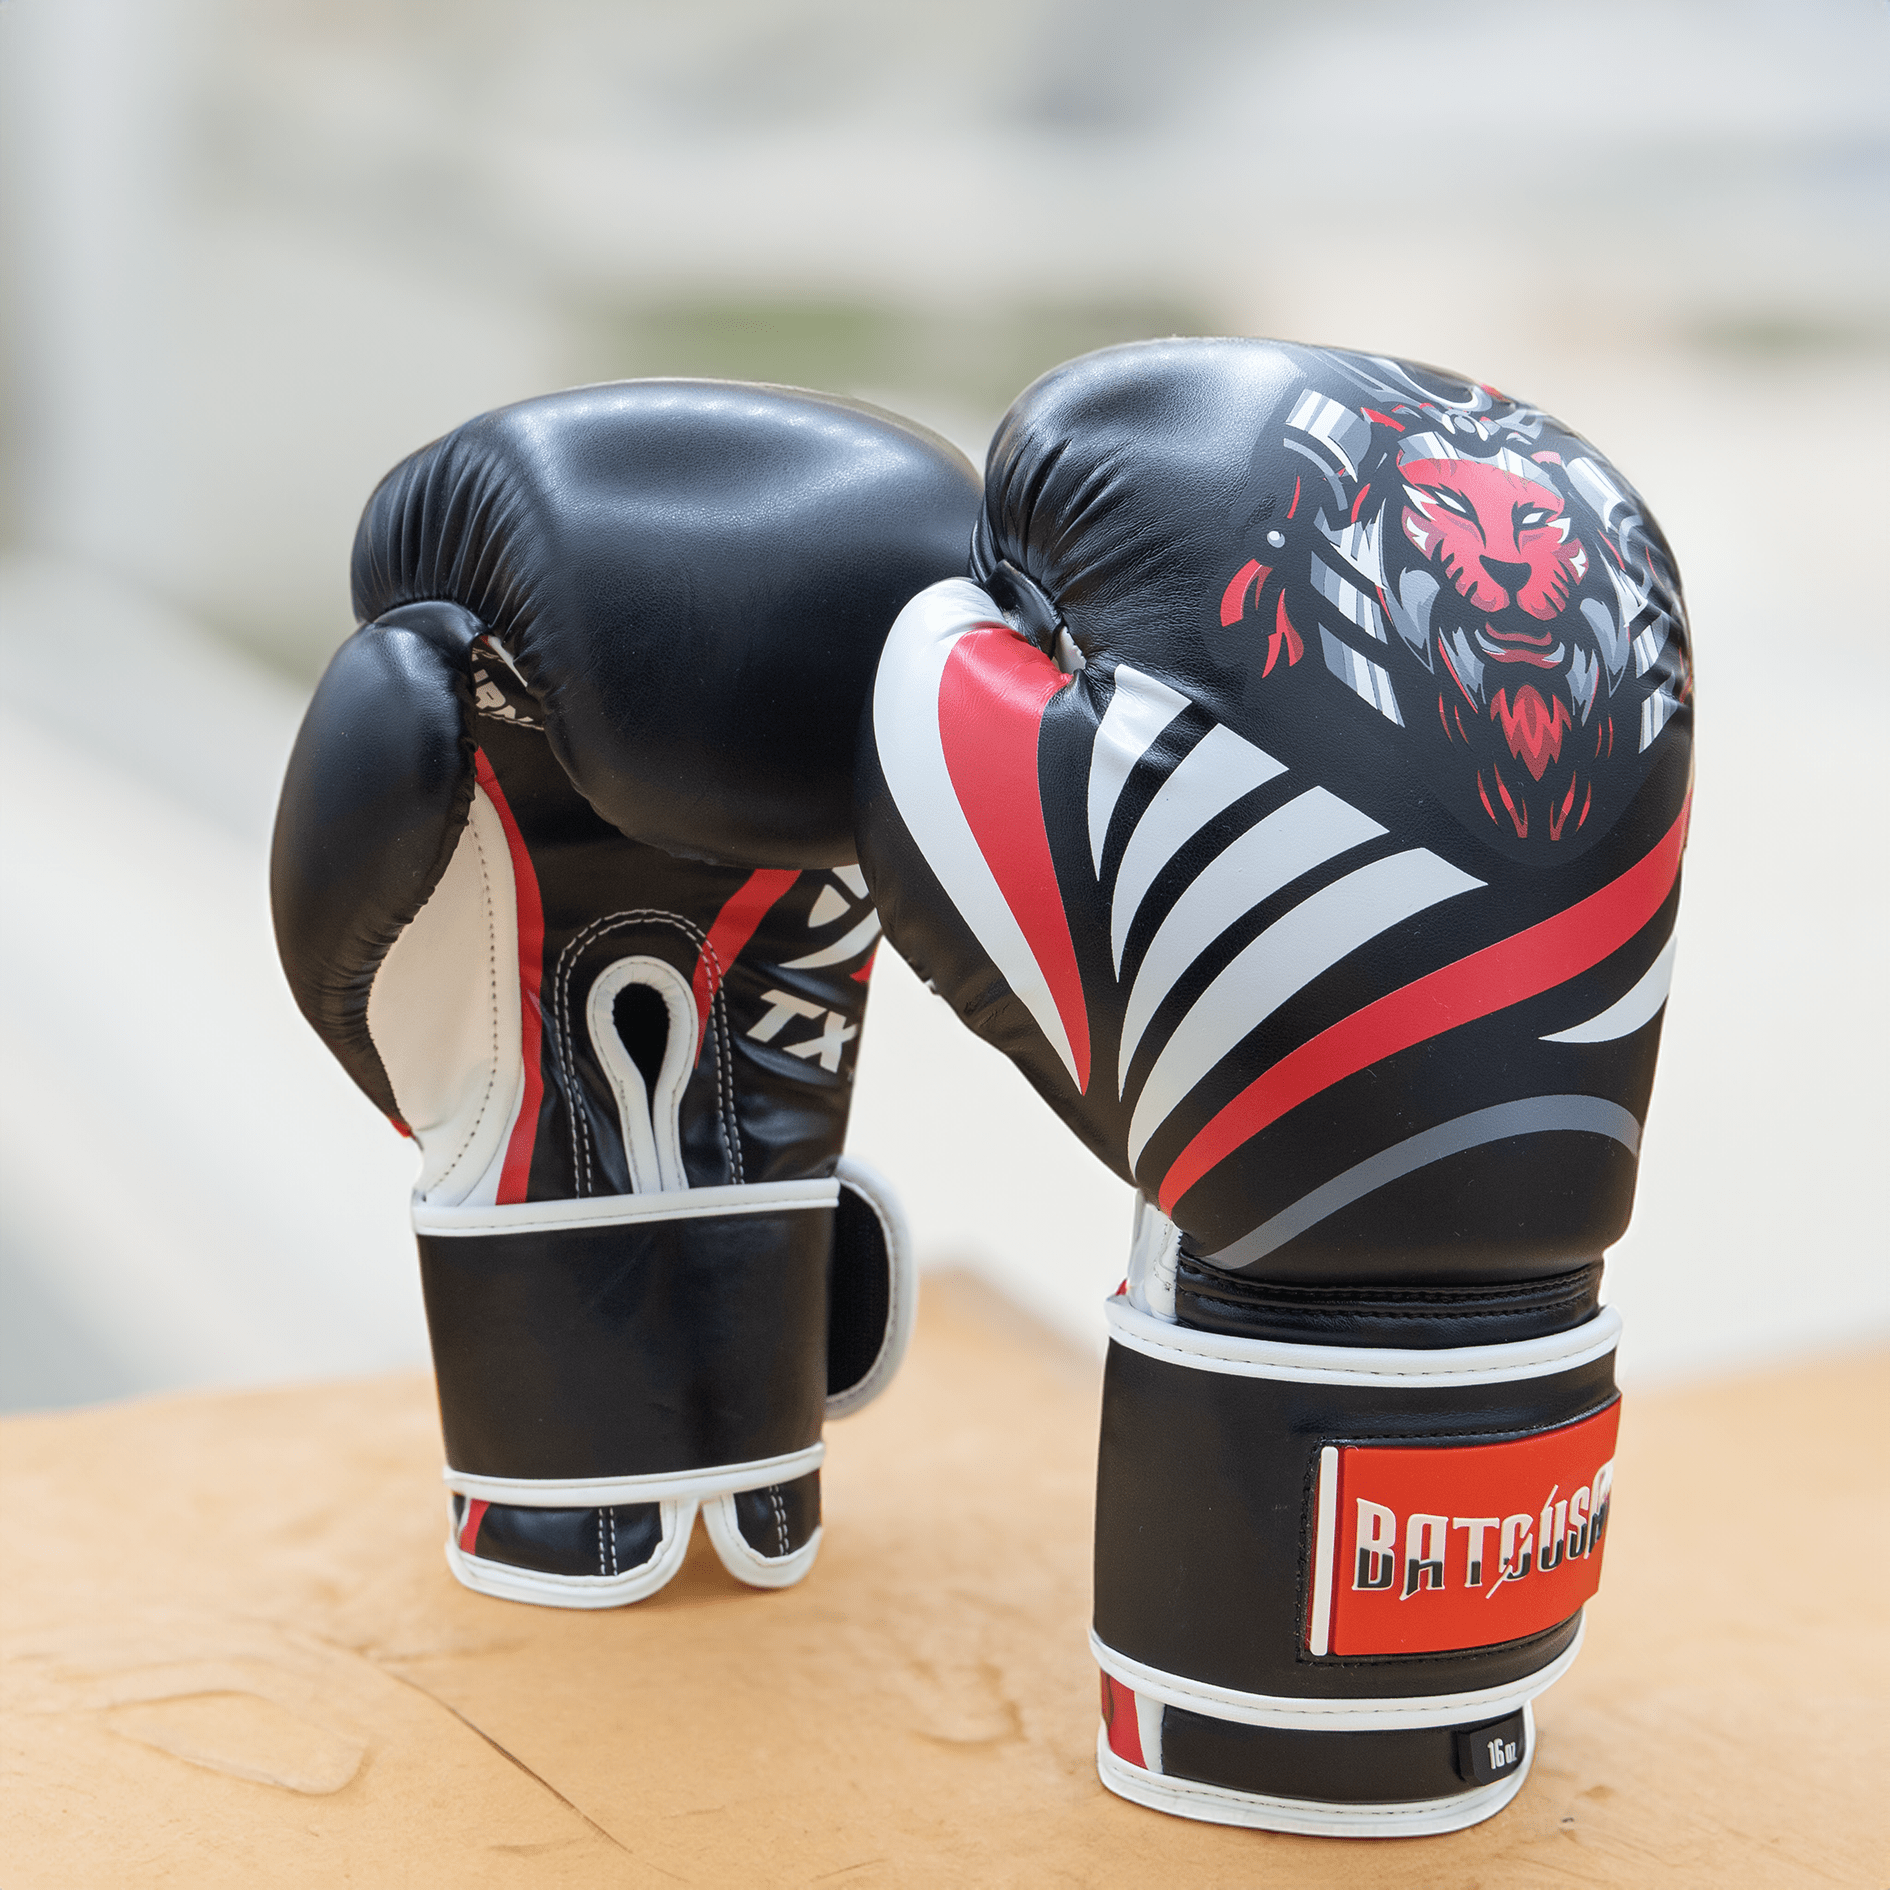 BATOUSAI TX1 Professional Series Training Gloves - BATOUSAI